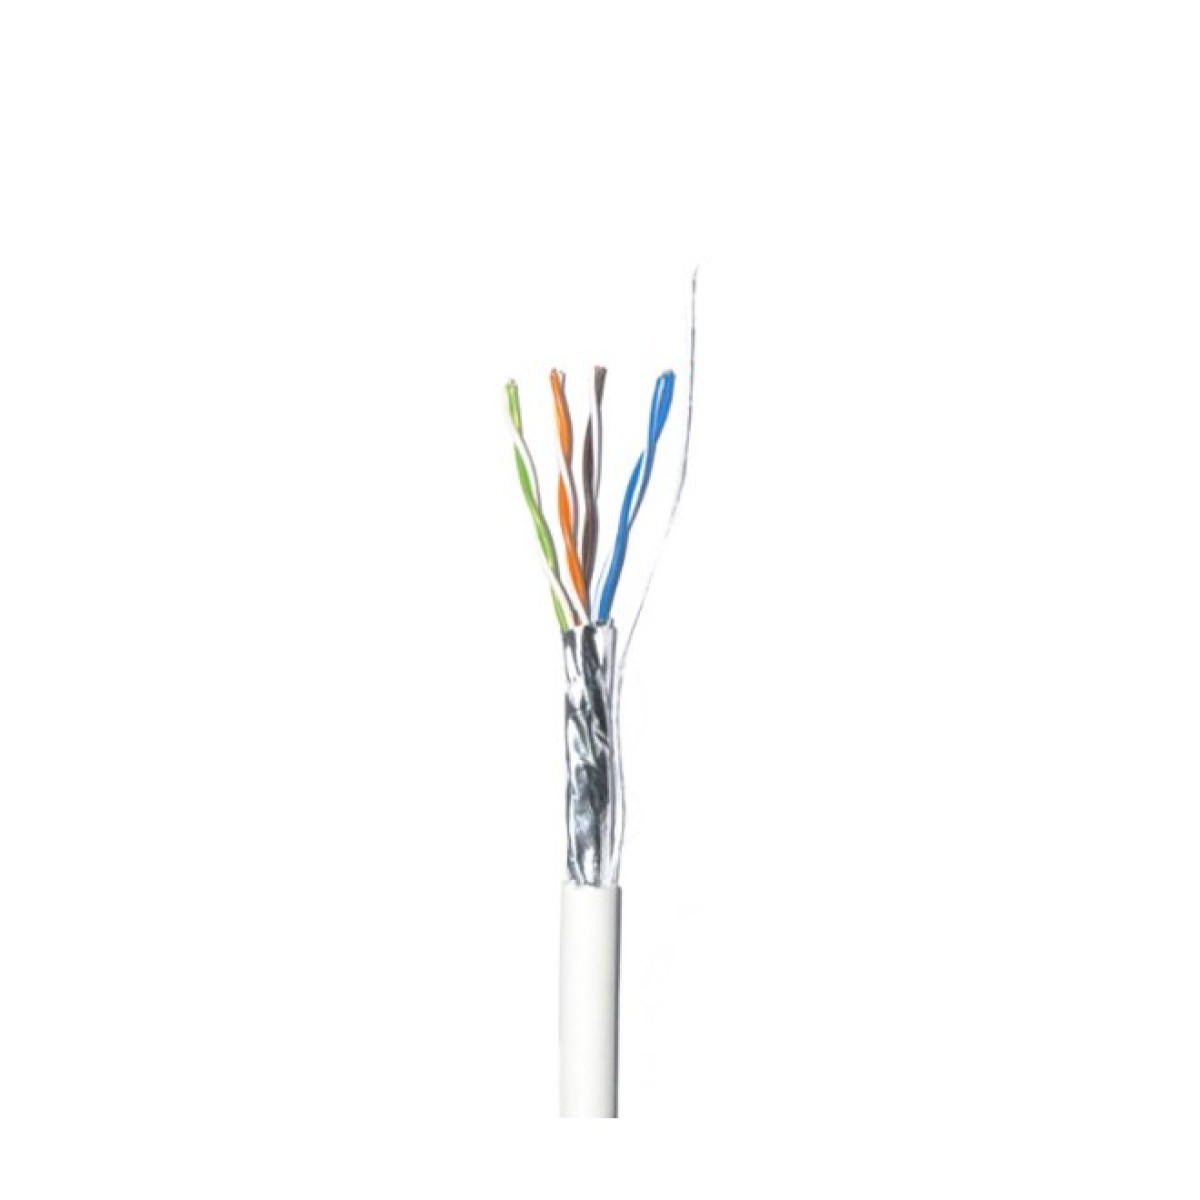 Lan кабель внутренний FTP Сat.5E 4PR CU (350МГц) PVC Indoor 100м Dialan 256_256.jpg